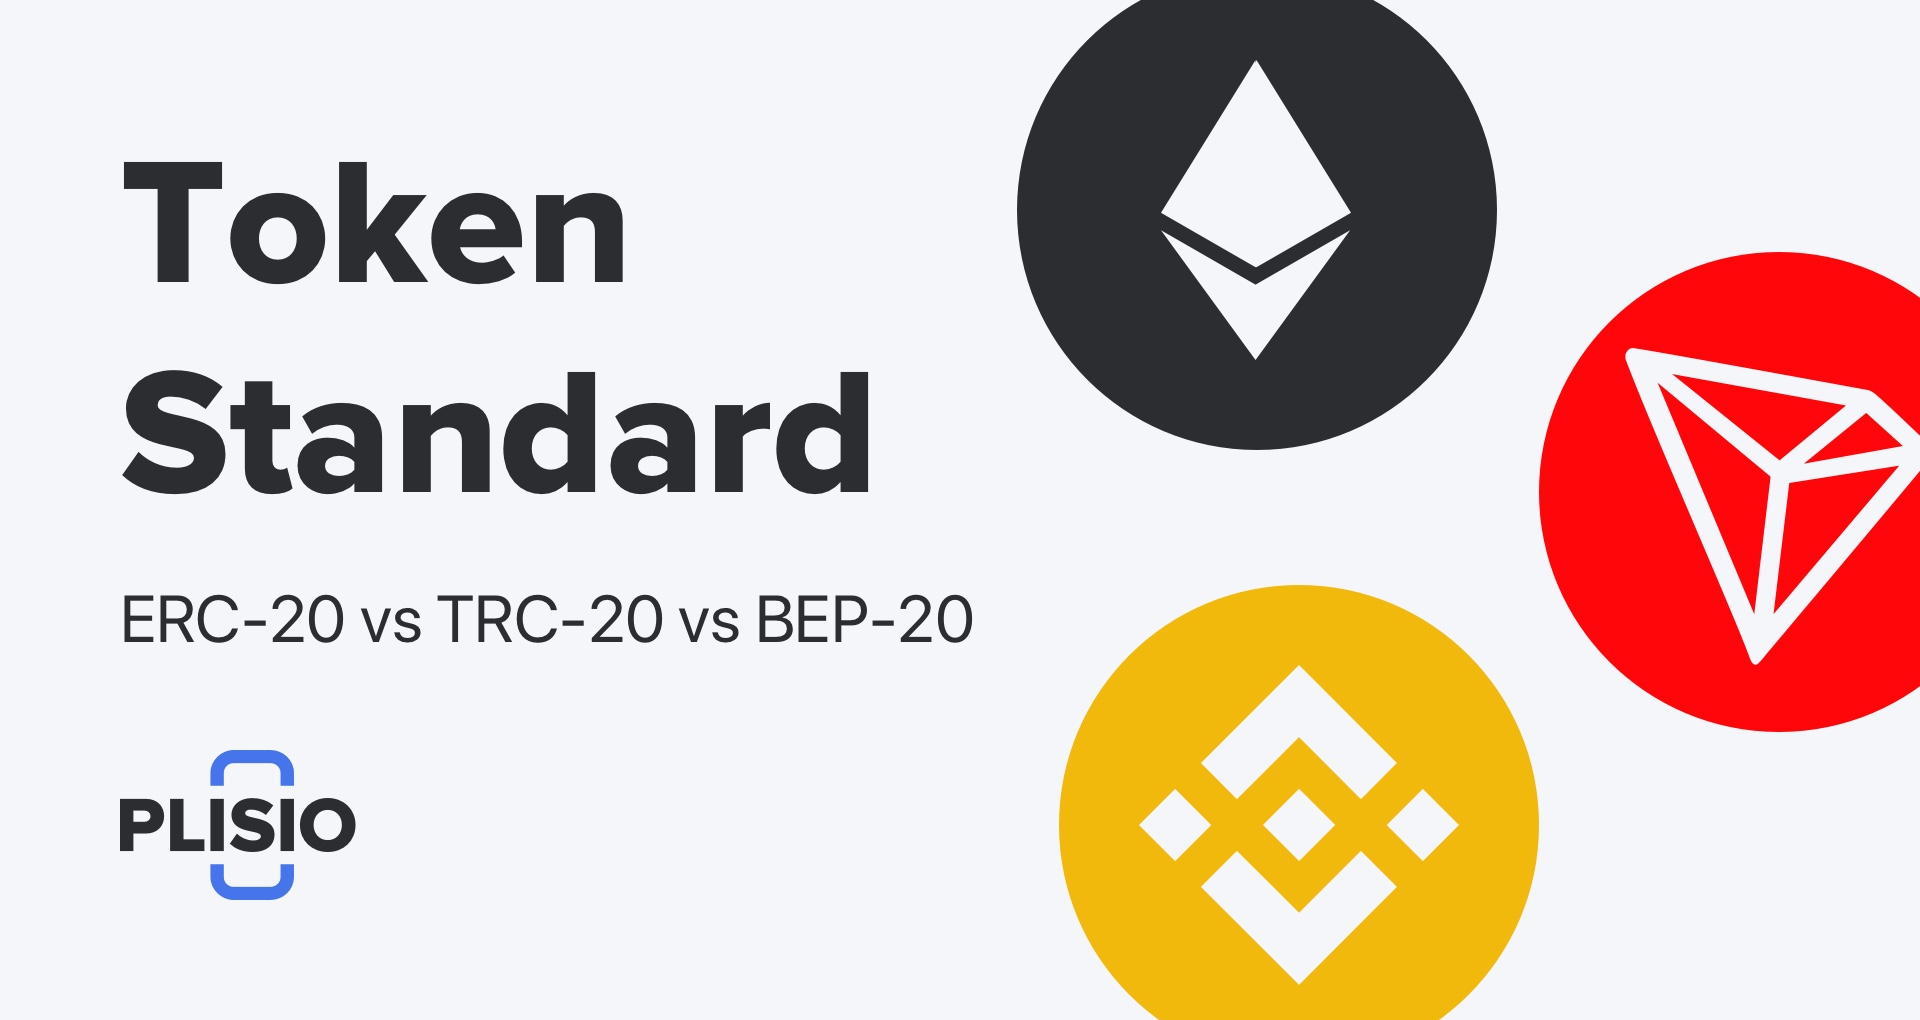 Standard tokena ERC-20 vs. TRC-20 vs. BEP-20